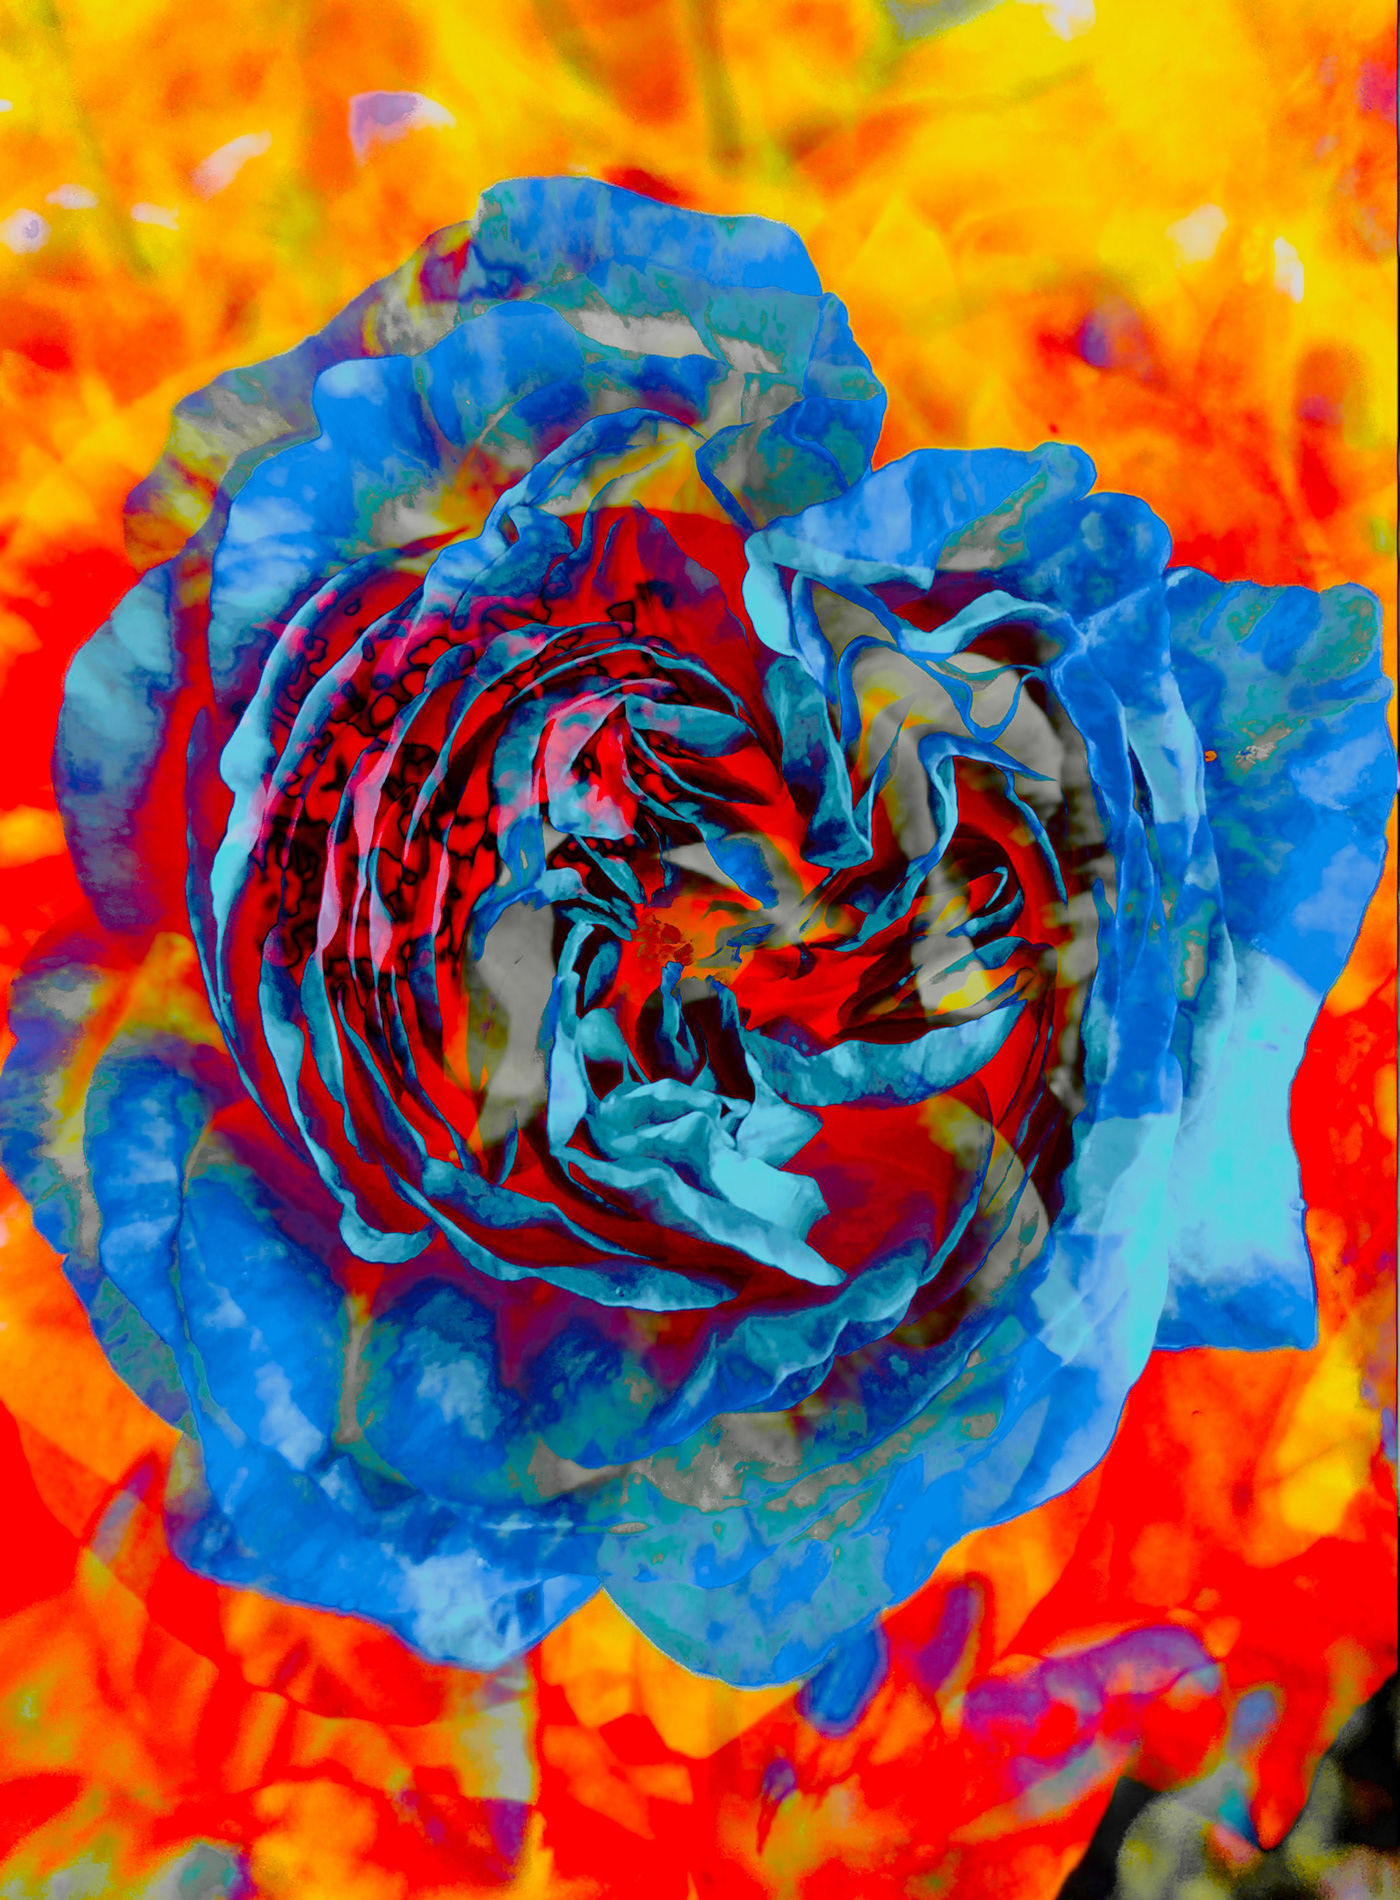 art Blue rose on fire kiev